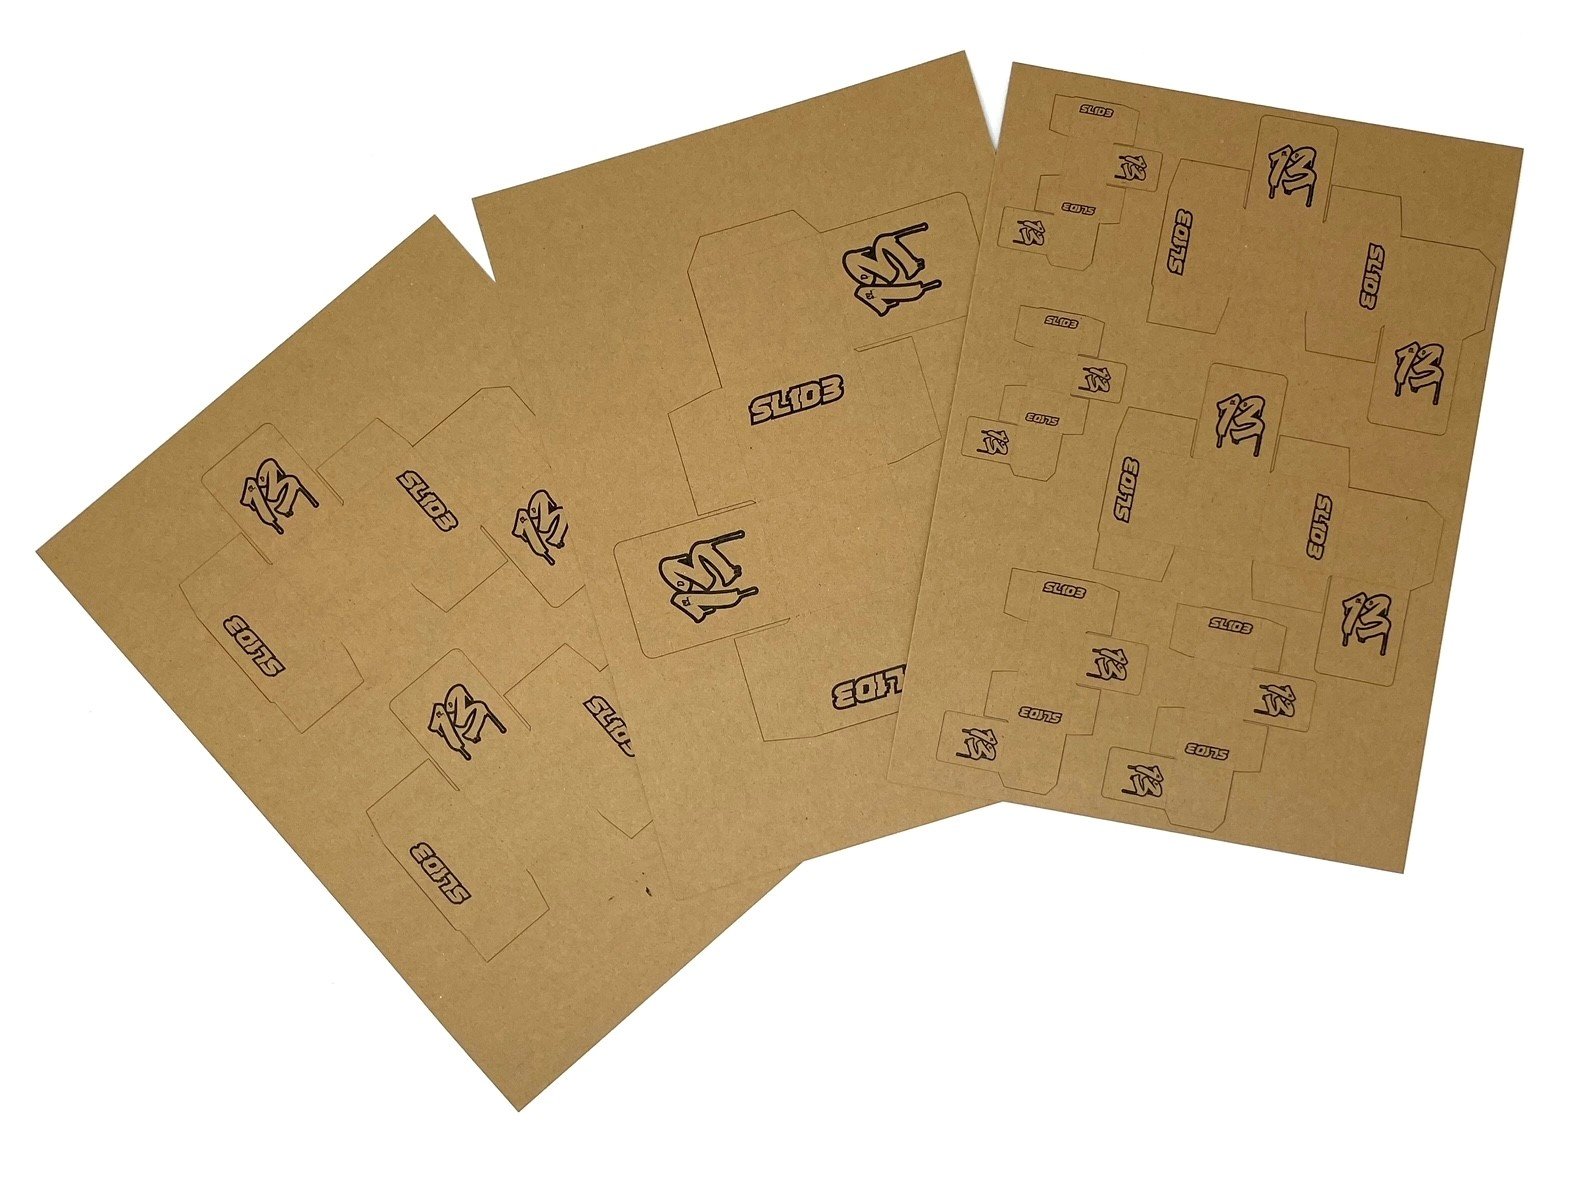 SL1D3 Customs Diorama Boxes (3 sheets) – SL1D3-070